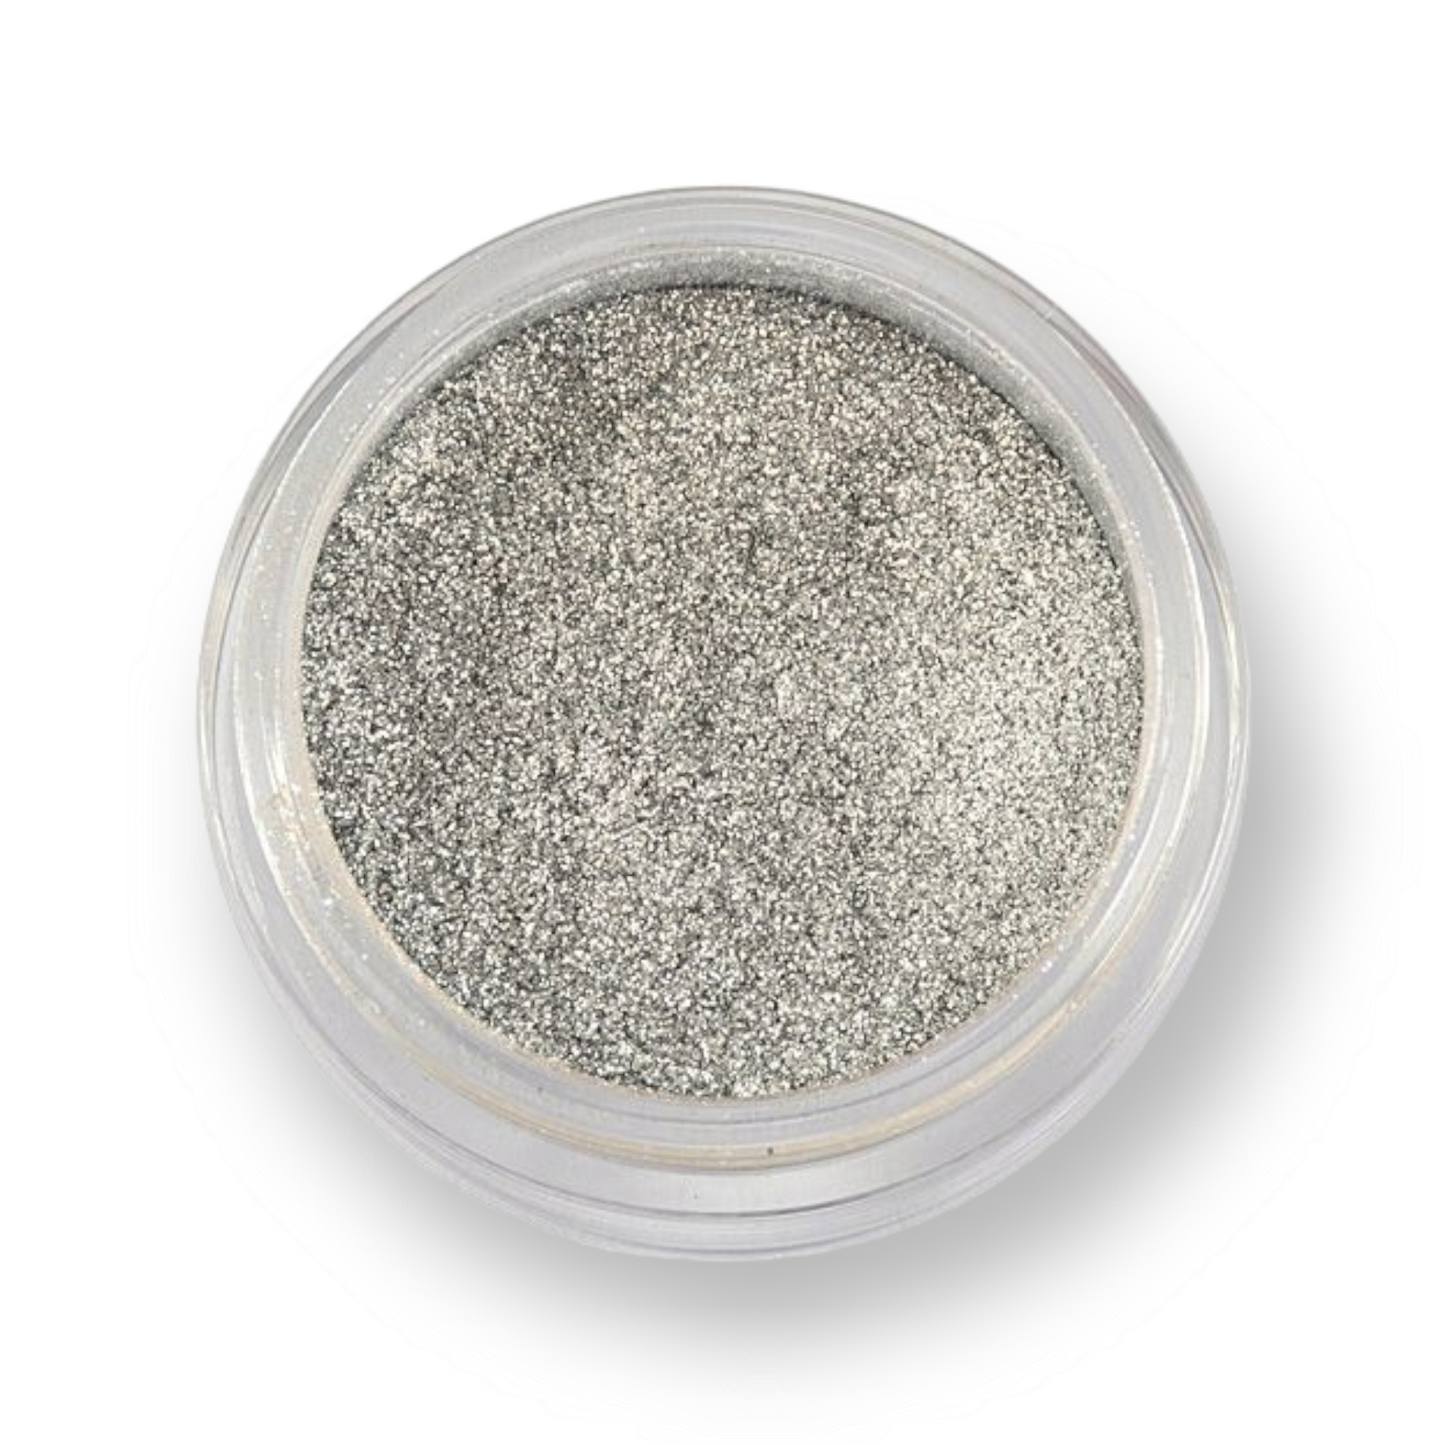 GRIMAS Sparkling Powder bioglitter 701, Silver Moon